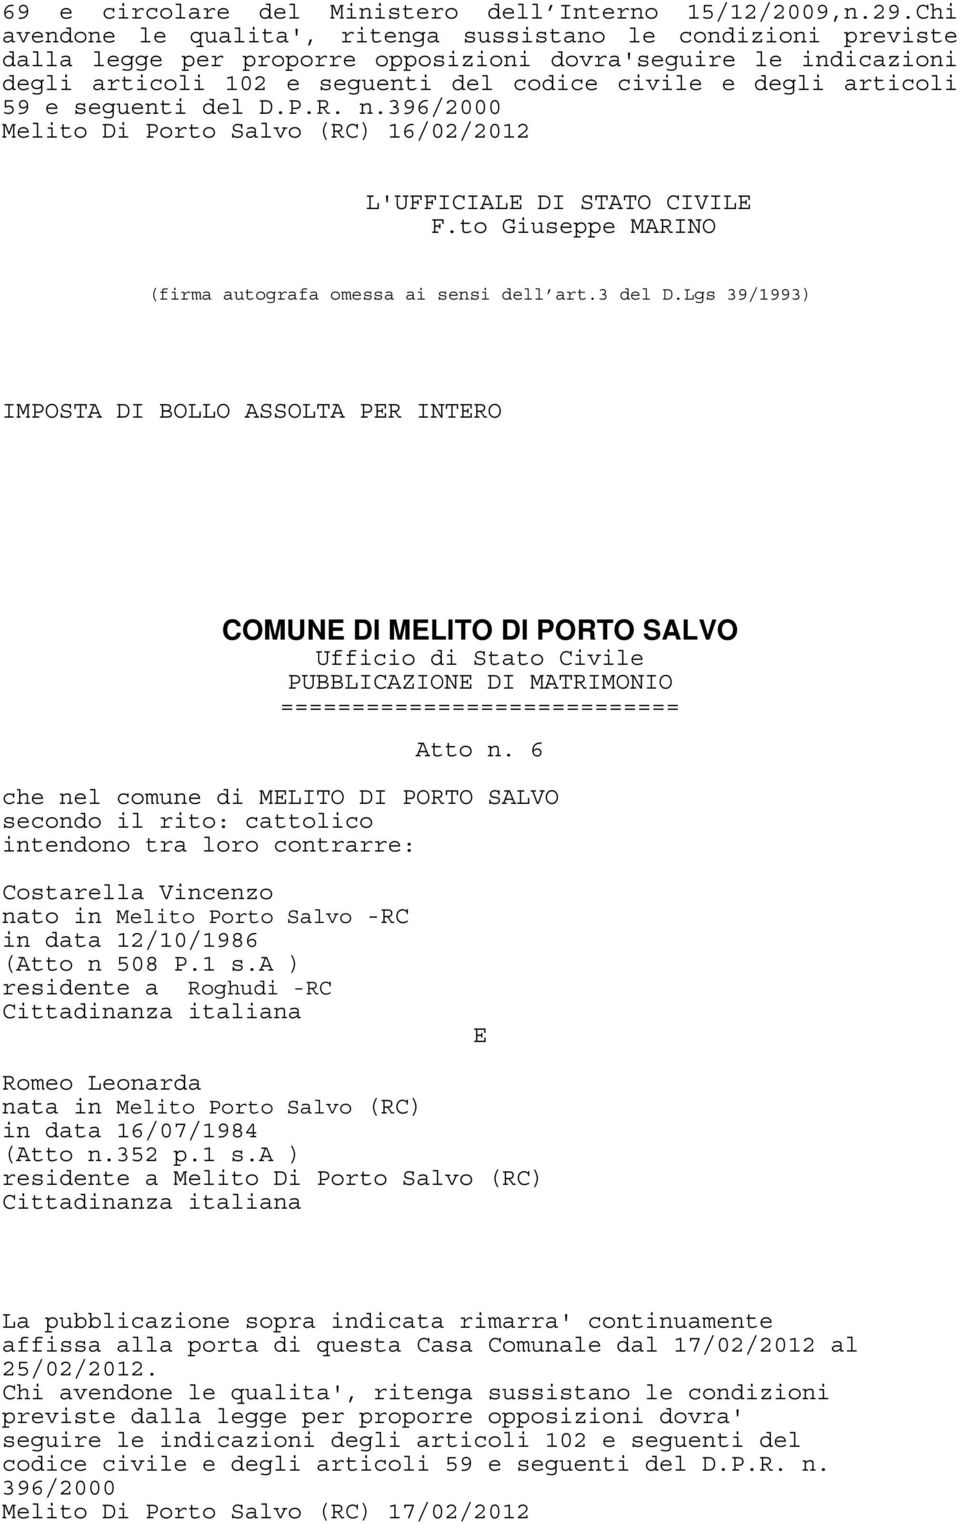 6 che nel comune di MLITO DI PORTO SALVO Costarella Vincenzo nato in Melito Porto Salvo -RC in data 12/10/1986 (Atto n 508 P.1 s.